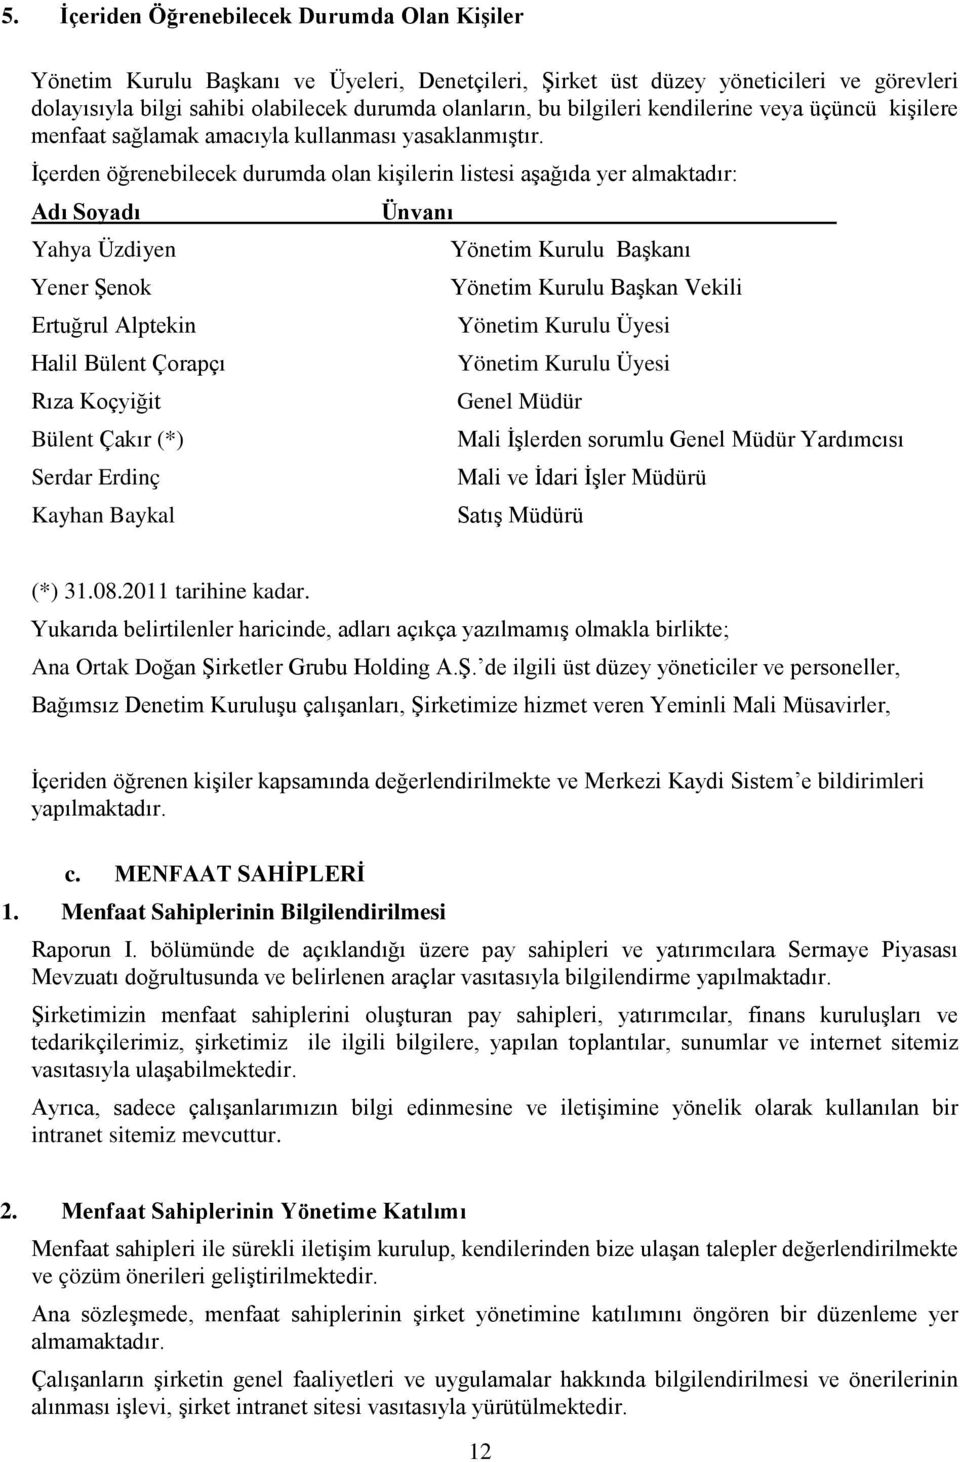 İçerden öğrenebilecek durumda olan kişilerin listesi aşağıda yer almaktadır: Adı Soyadı Ünvanı Yahya Üzdiyen Yönetim Kurulu Başkanı Yener Şenok Yönetim Kurulu Başkan Vekili Ertuğrul Alptekin Yönetim